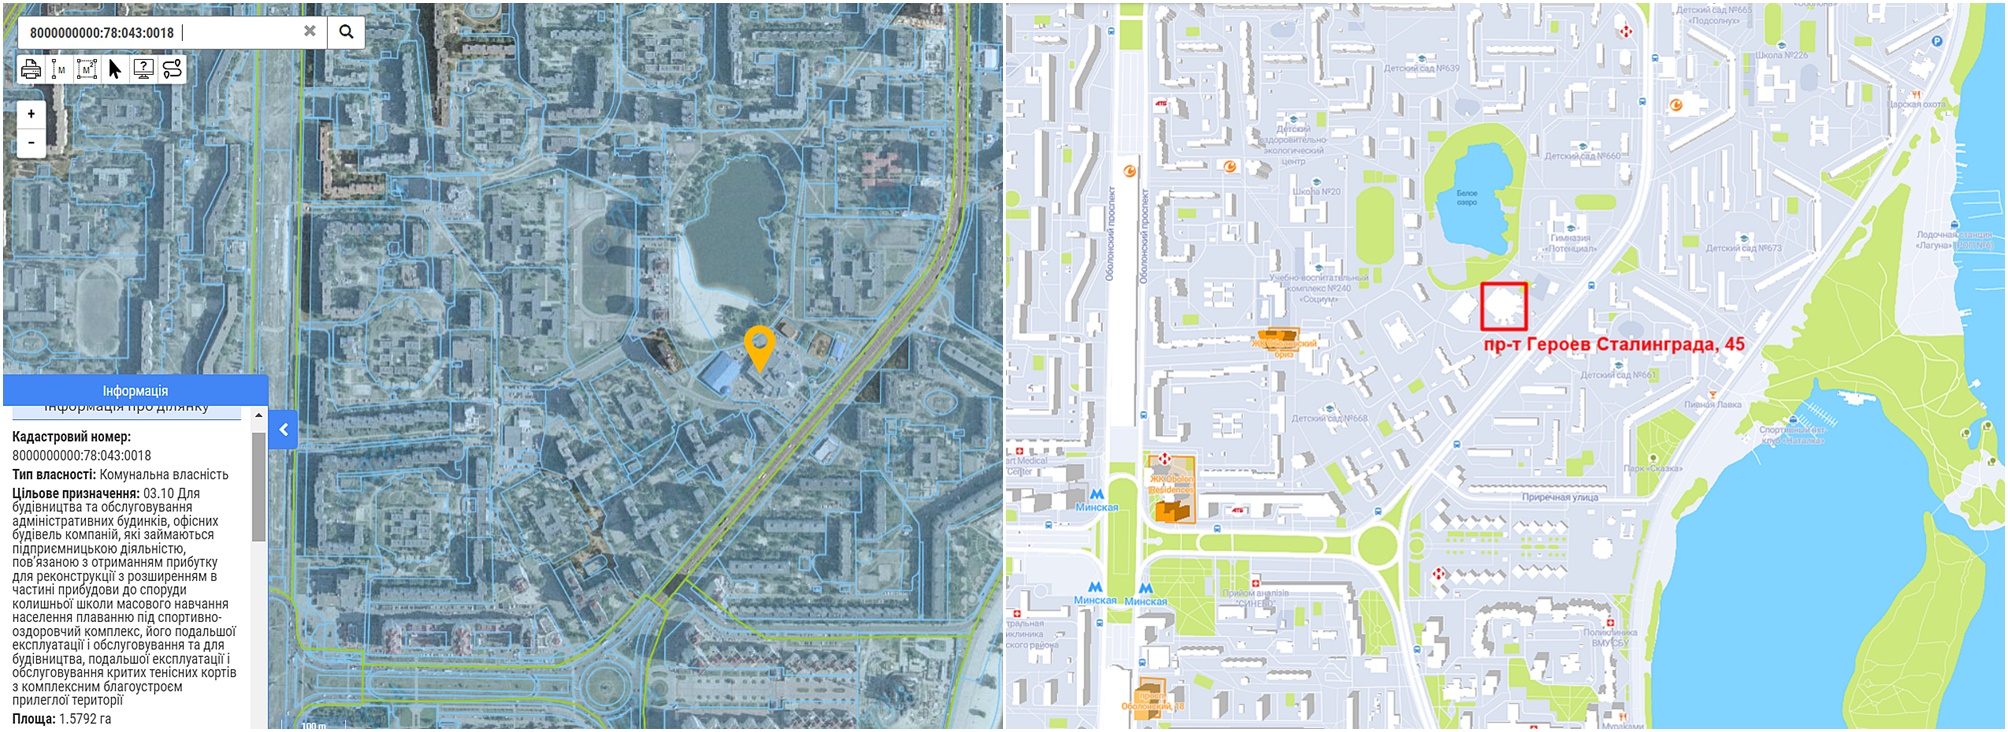 Реконструкция на просп. Героев Сталинграда, 45 данные кадастра и на карте